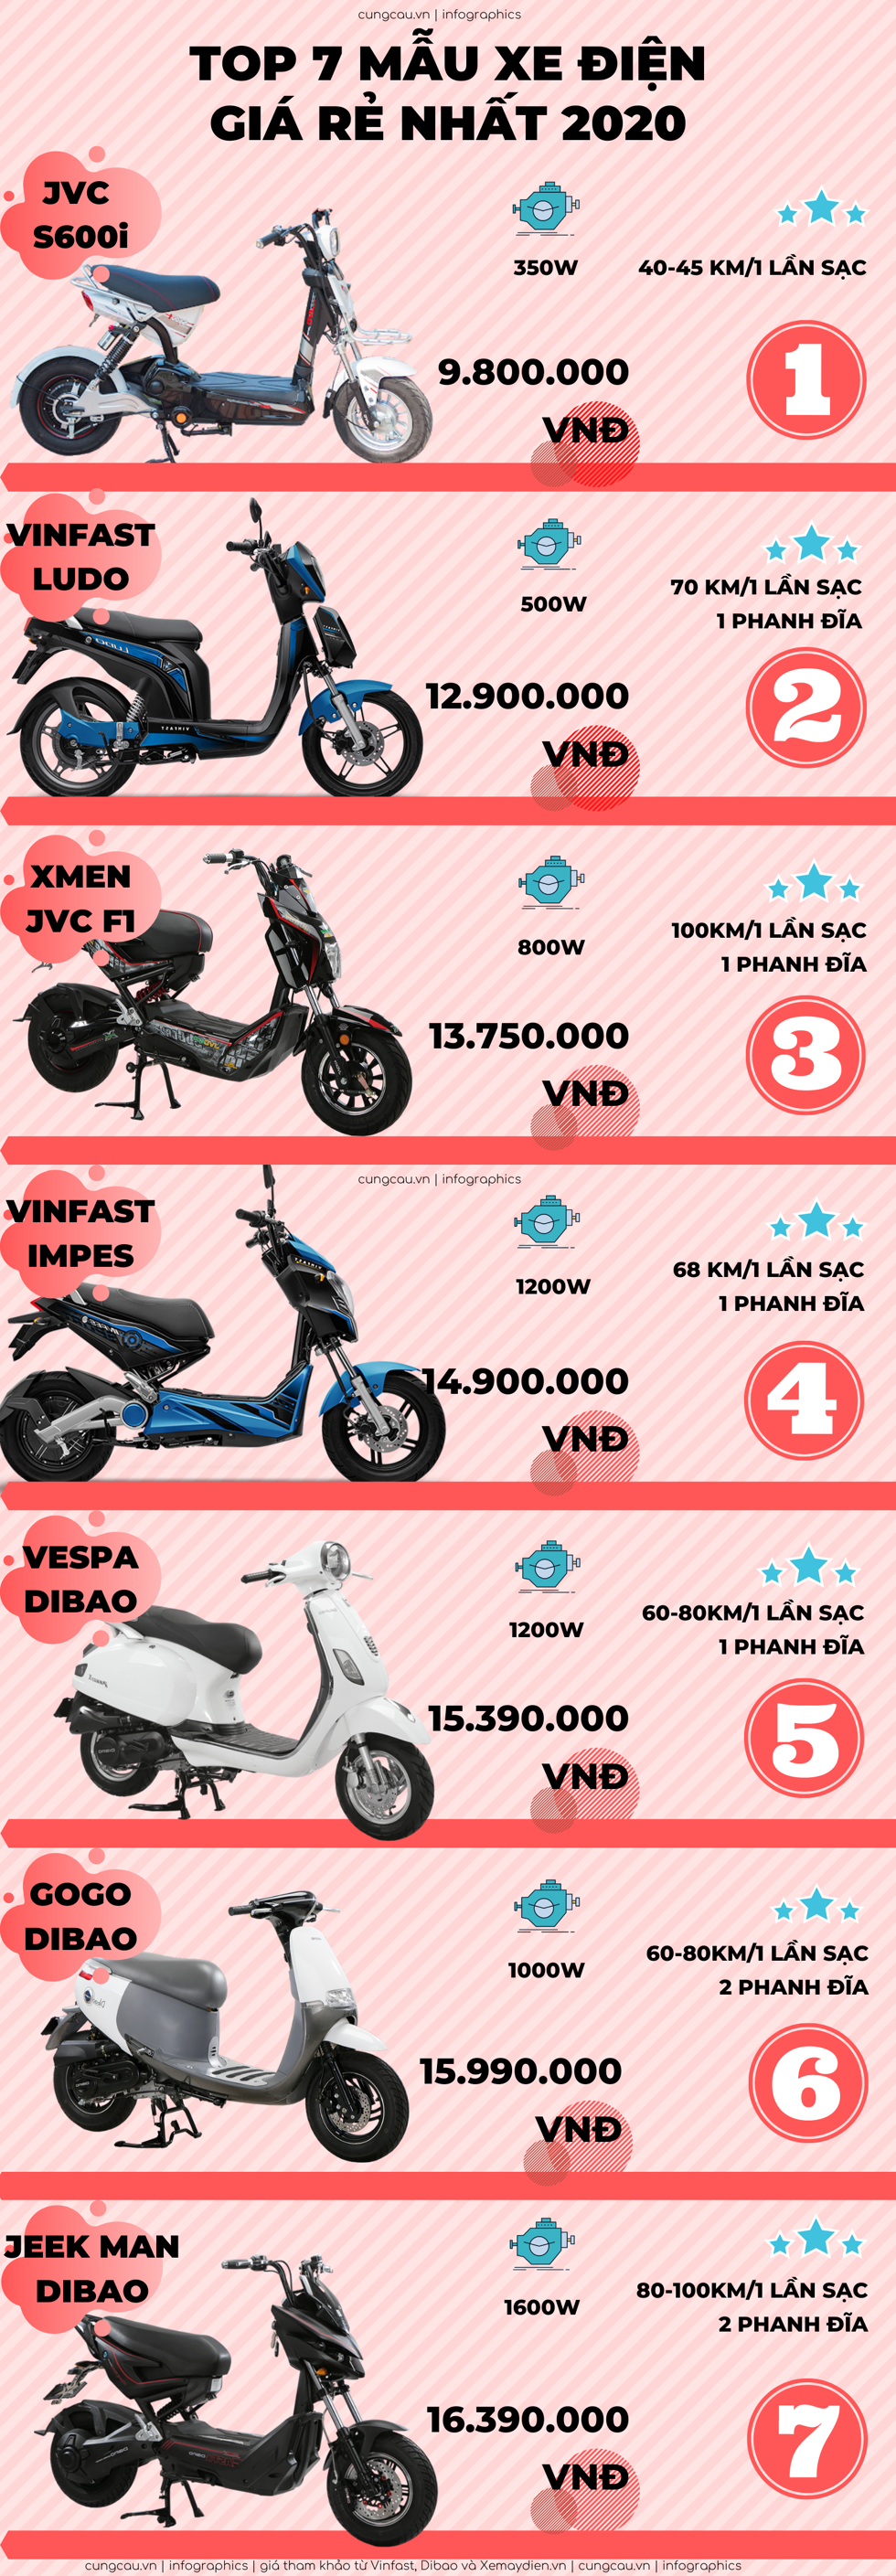 Top 7 xe máy điện rẻ nhất: Vinfast có 2 đại diện, giá rẻ bất ngờ